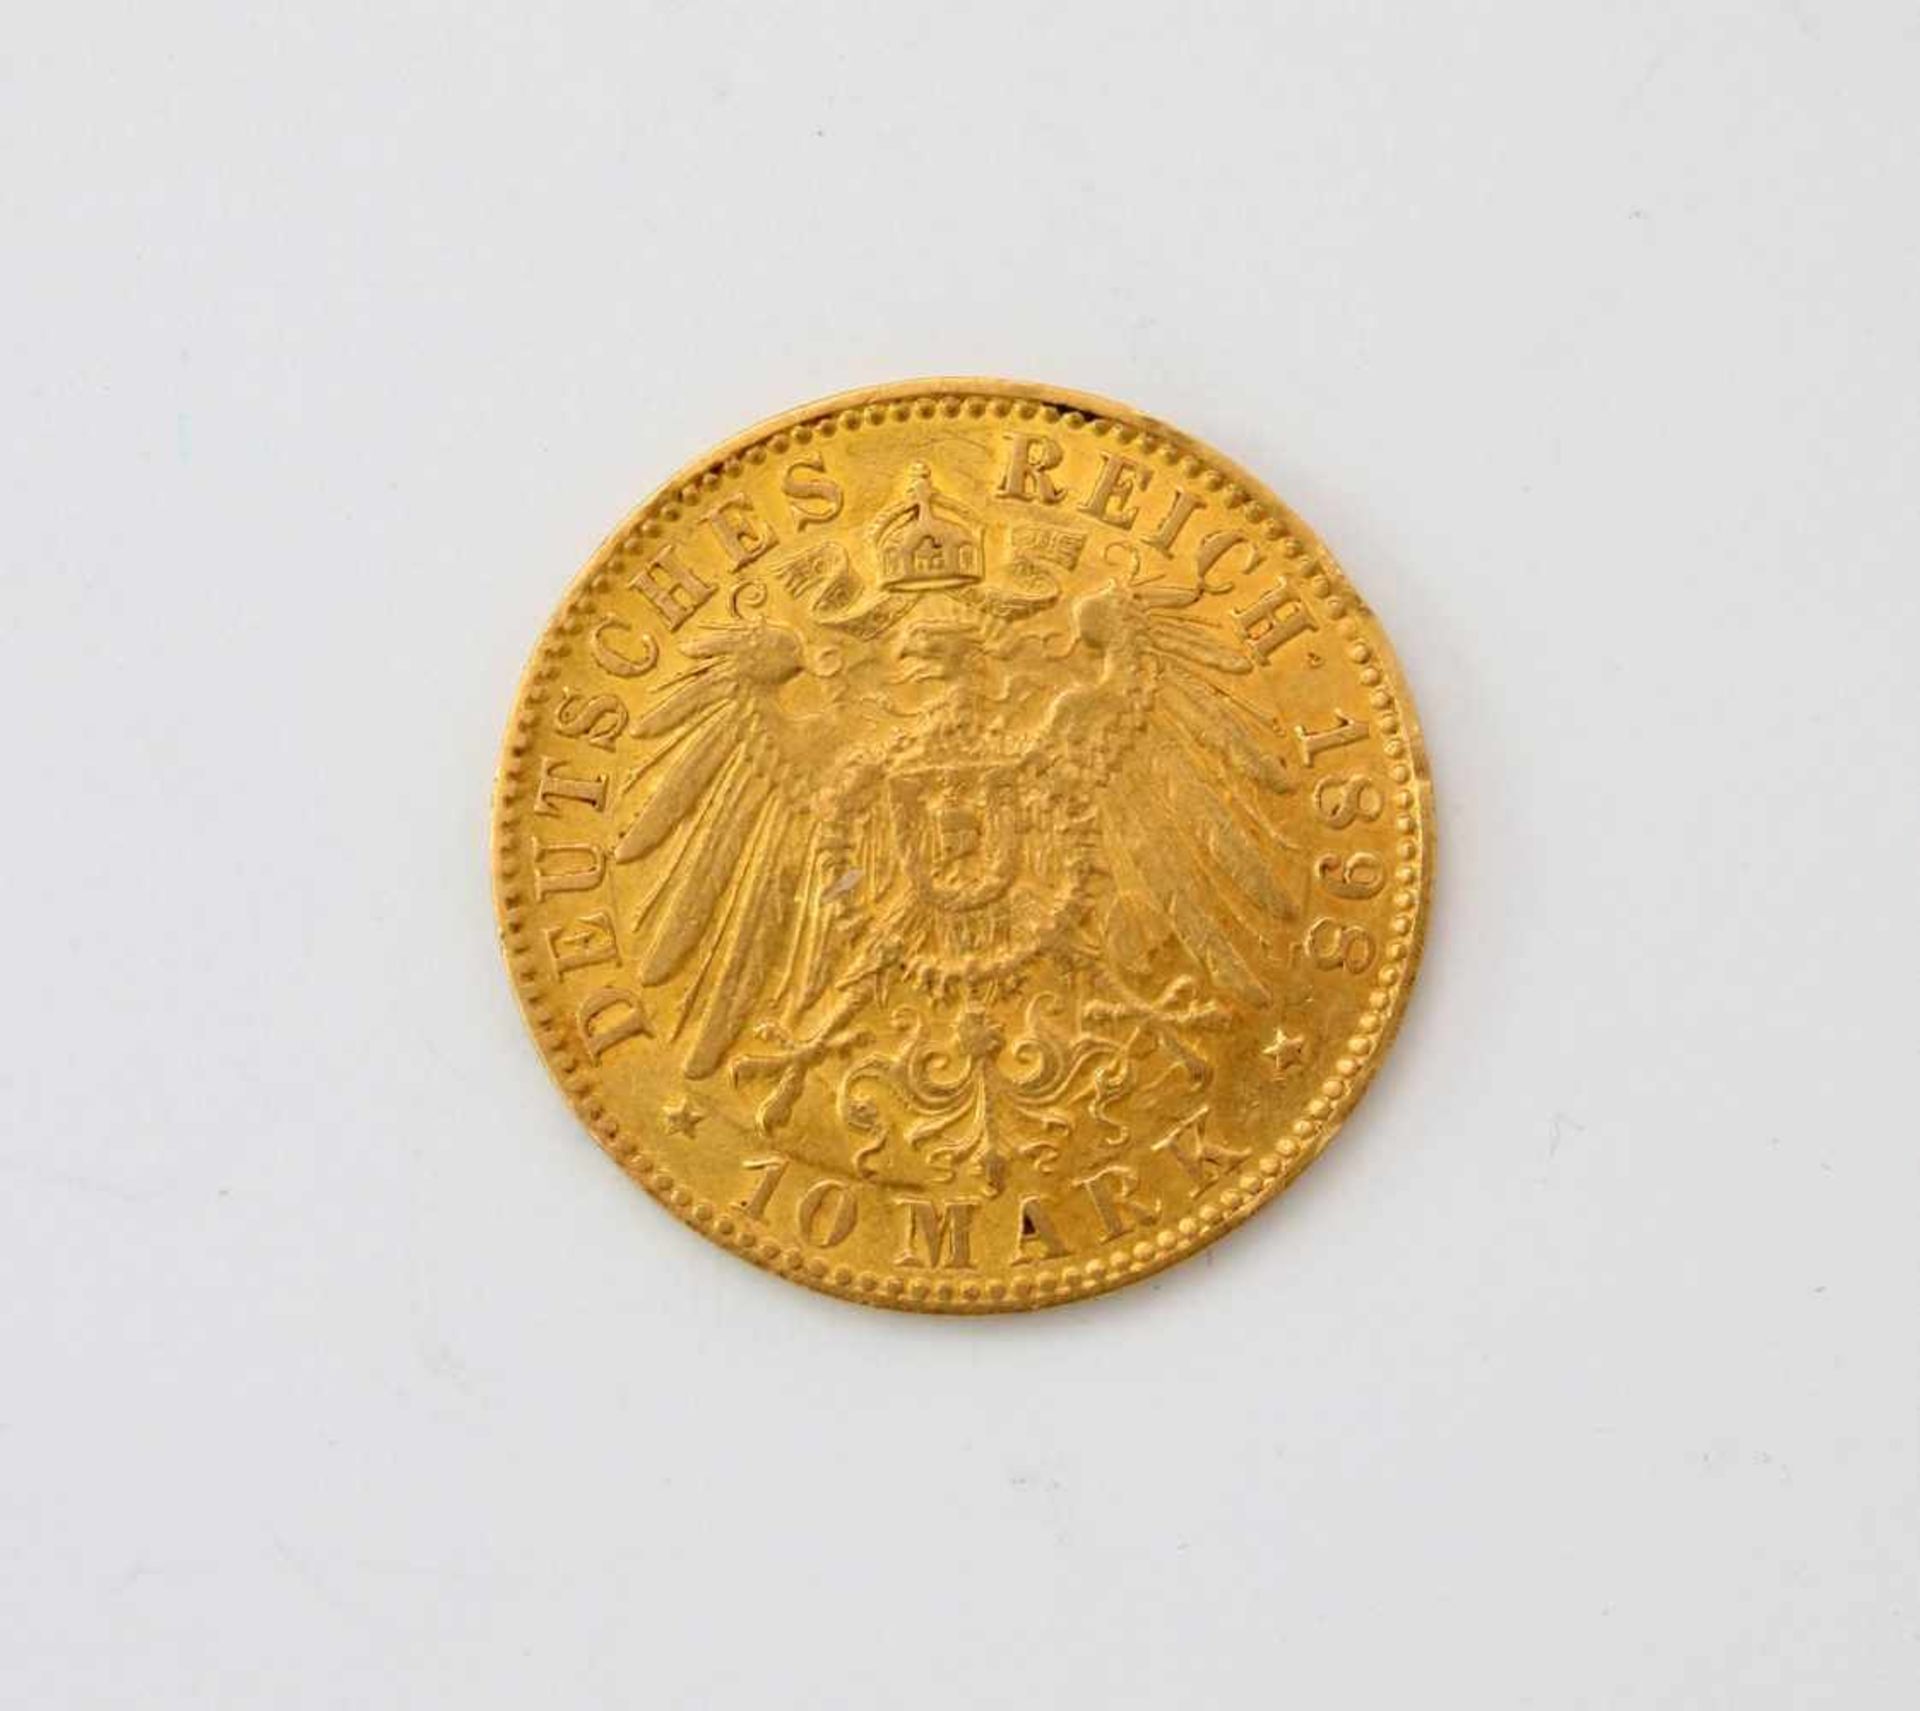 Goldmünze 10 Mark - Hamburg 1898Vorzüglich erhalten, 900er, 4 g, J, mit Münzpass. - Bild 2 aus 2